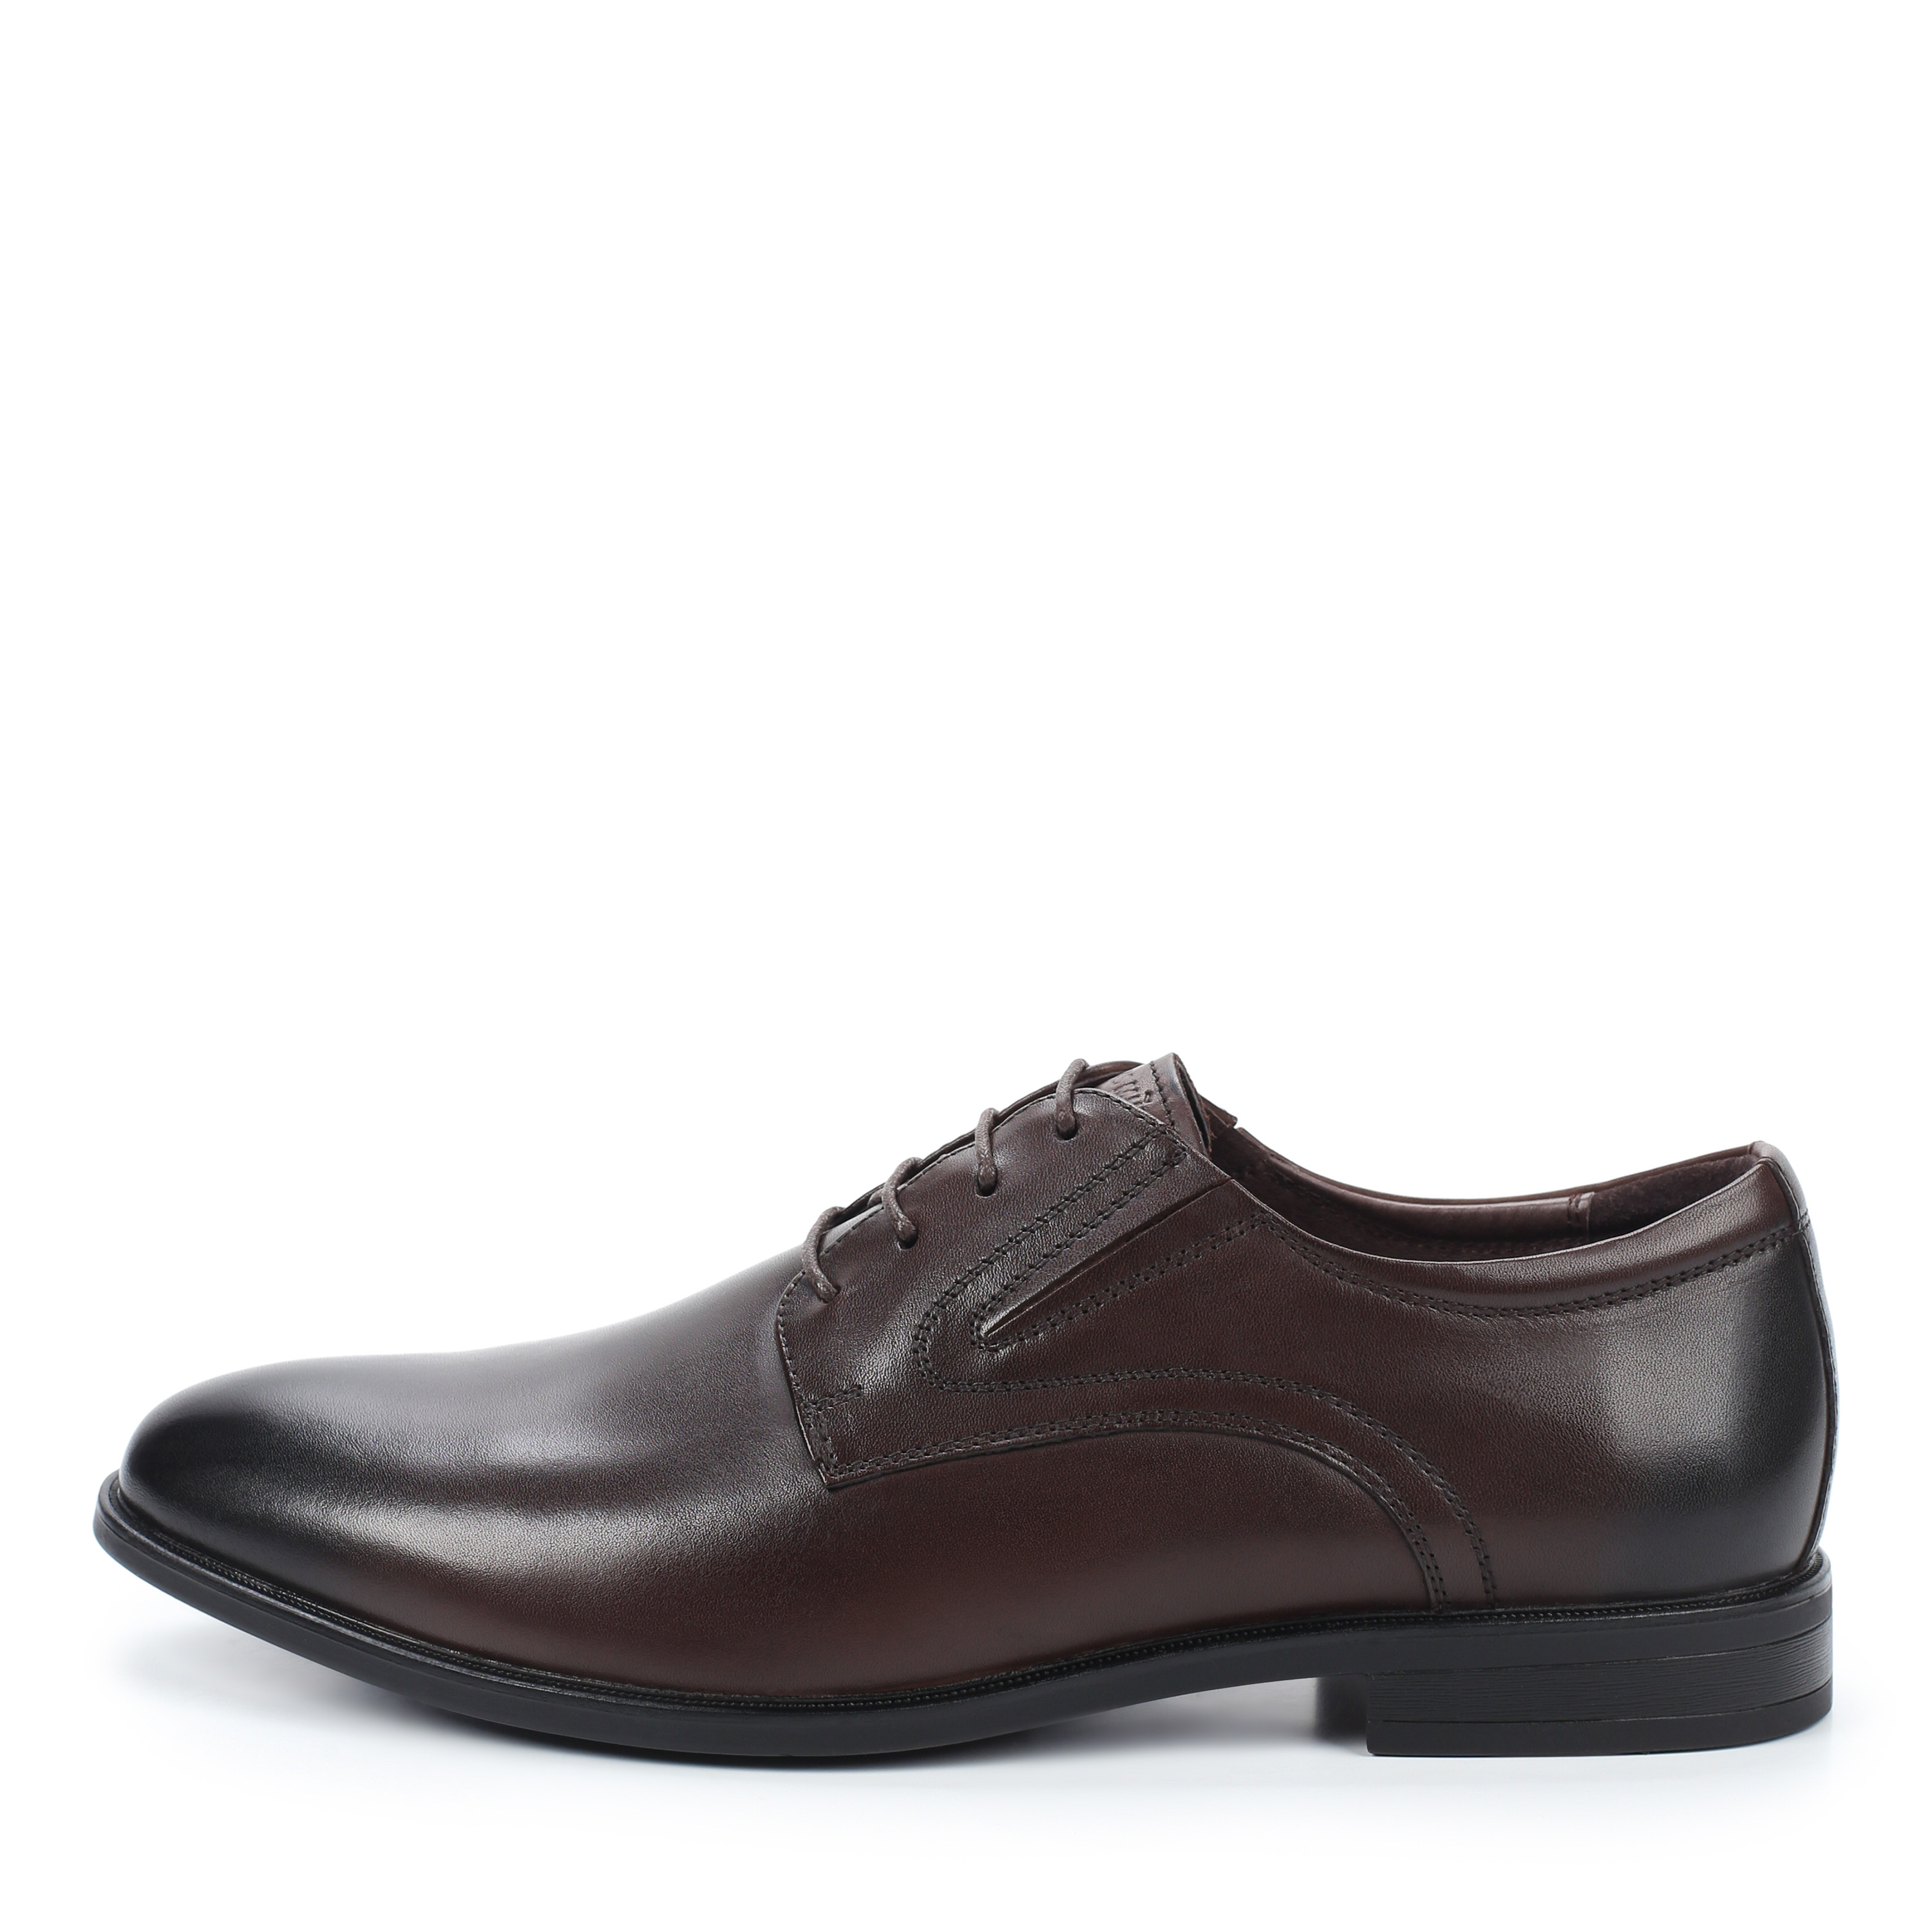 Туфли Thomas Munz 058-407A-1109 058-407A-1109, цвет коричневый, размер 44 полуботинки - фото 1